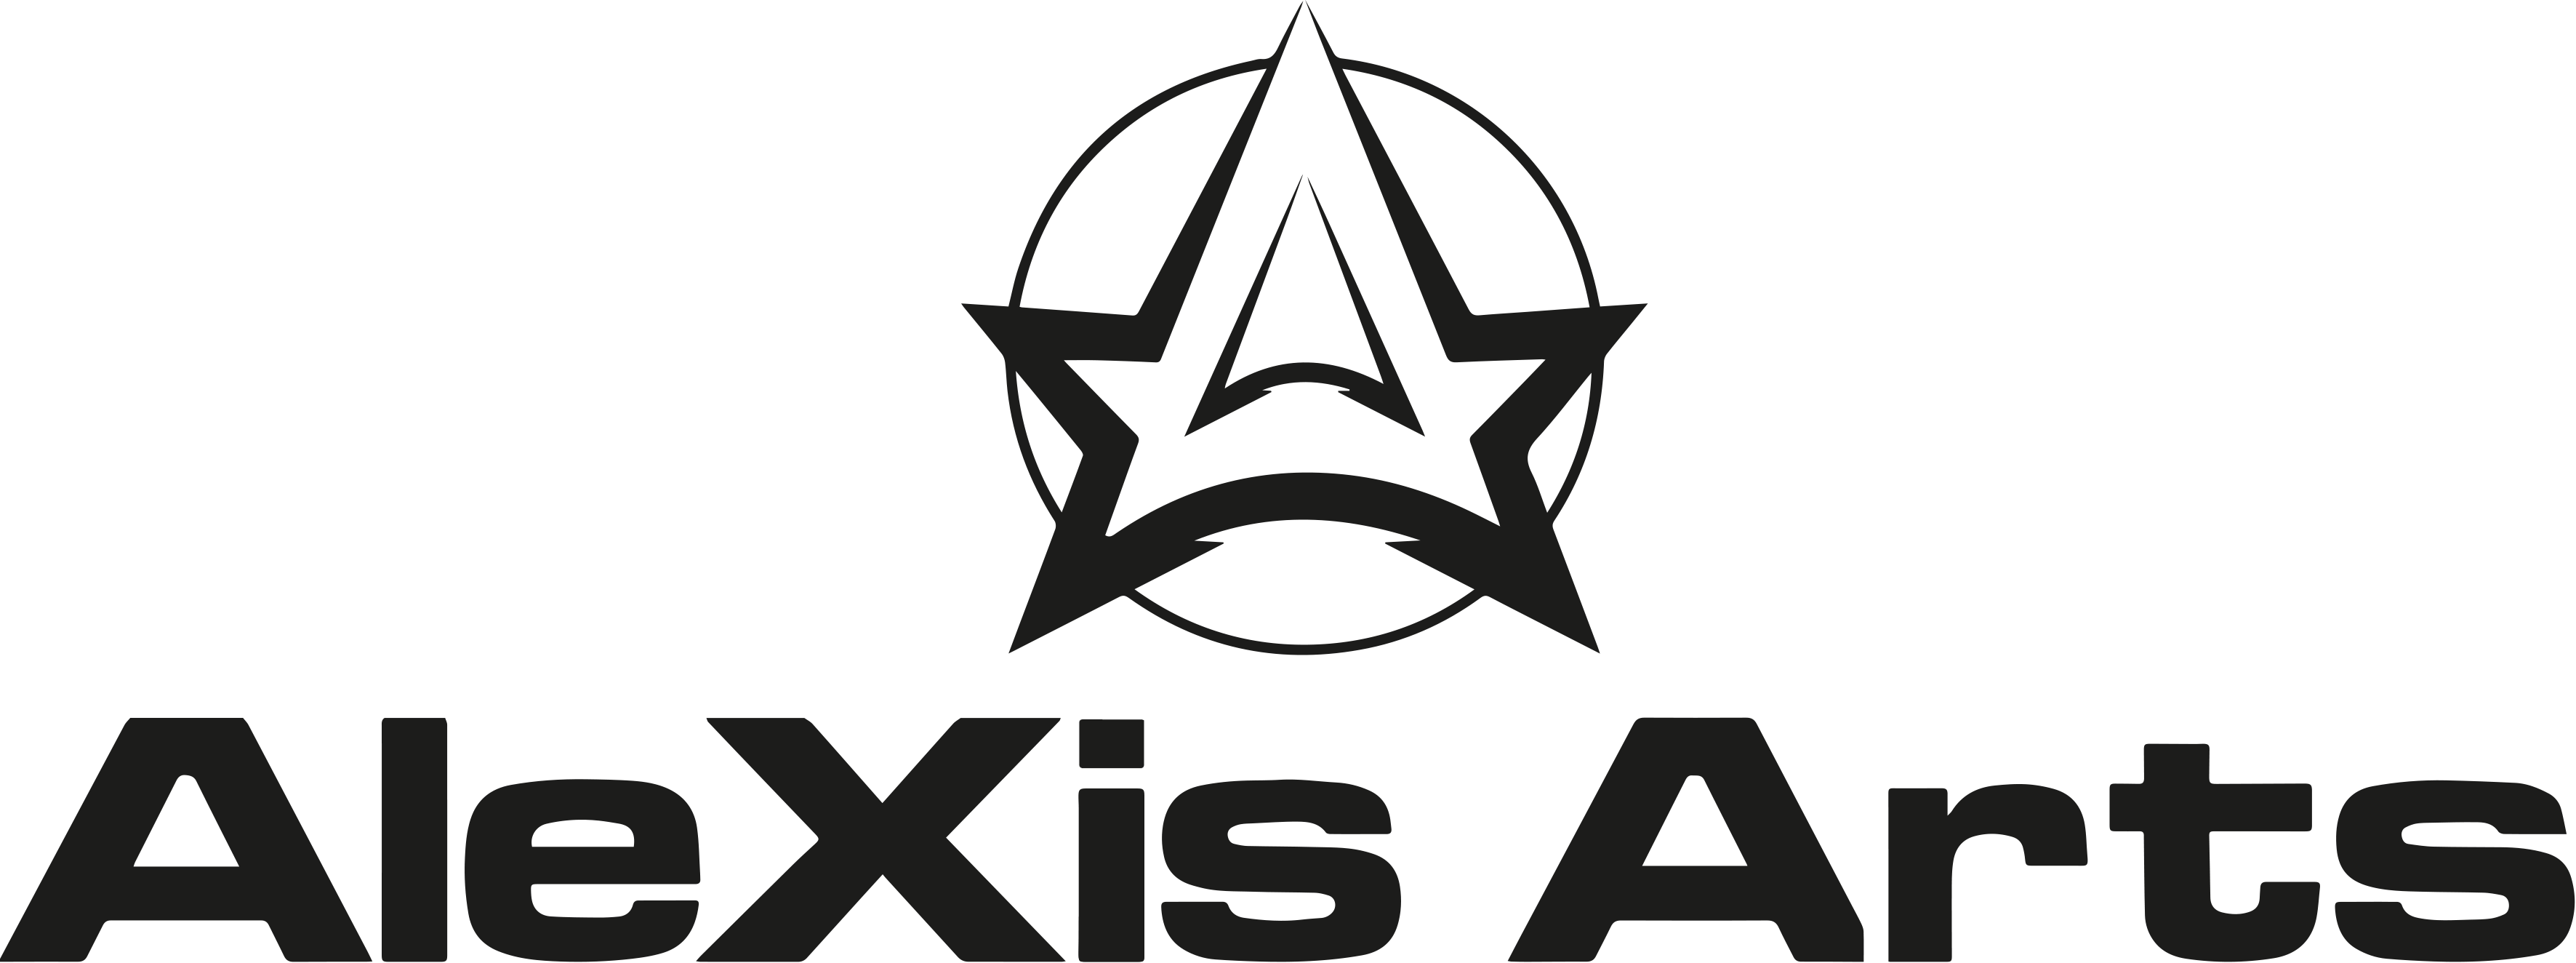 Alexis Logo - Alexis Arts - alexis-arts-logo - Alexis Arts